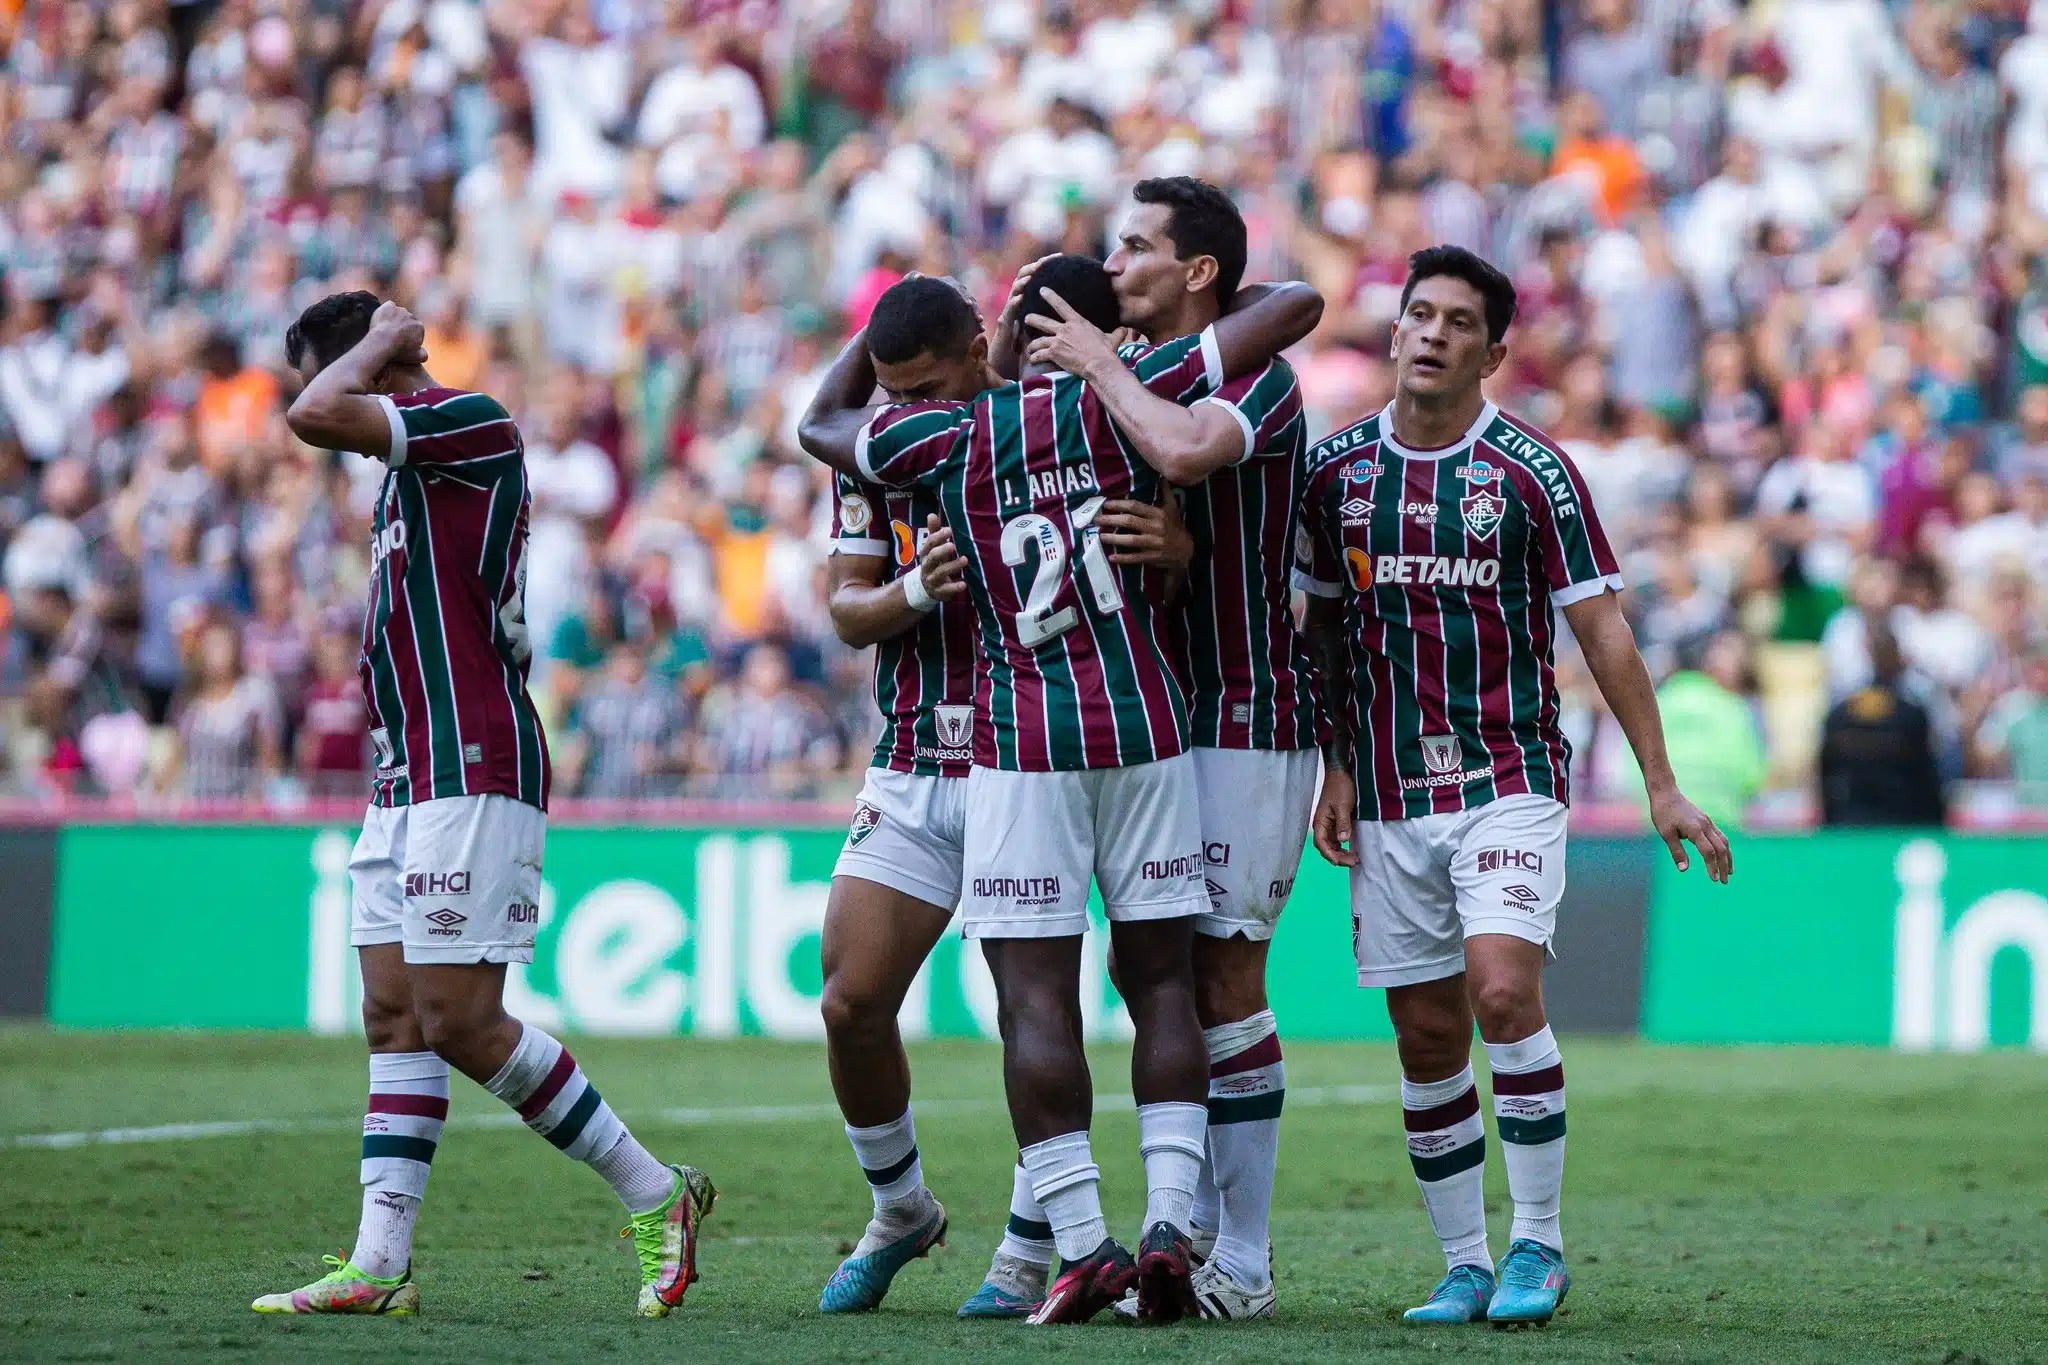 Olhar do adversário: veja a opinião de um torcedor do Fluminense sobre o jogo contra o São Paulo